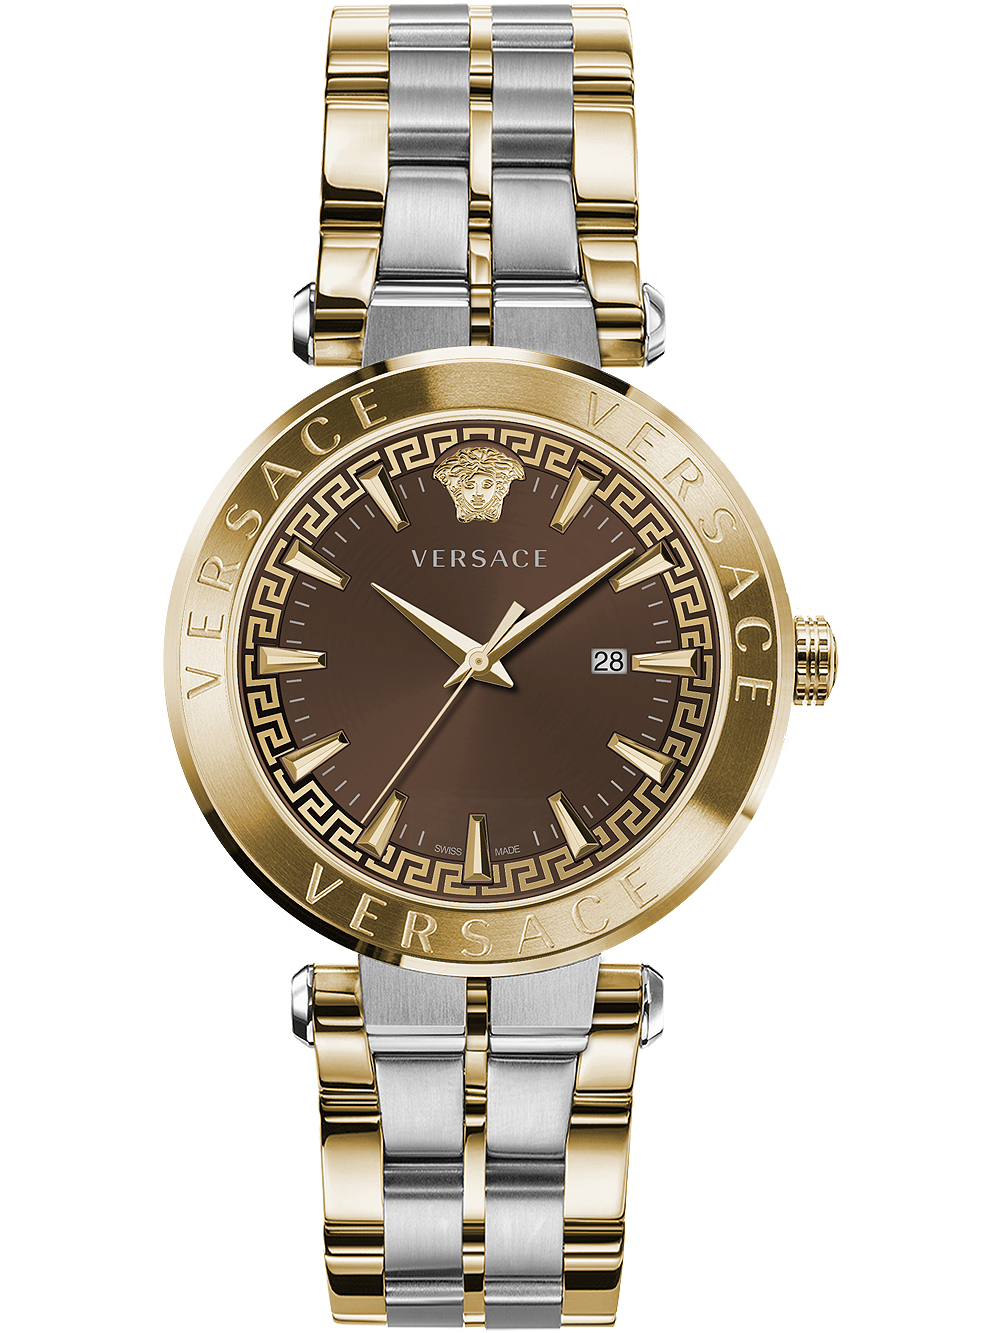 Zegarek męski Versace VE2G00421 Aion złoty